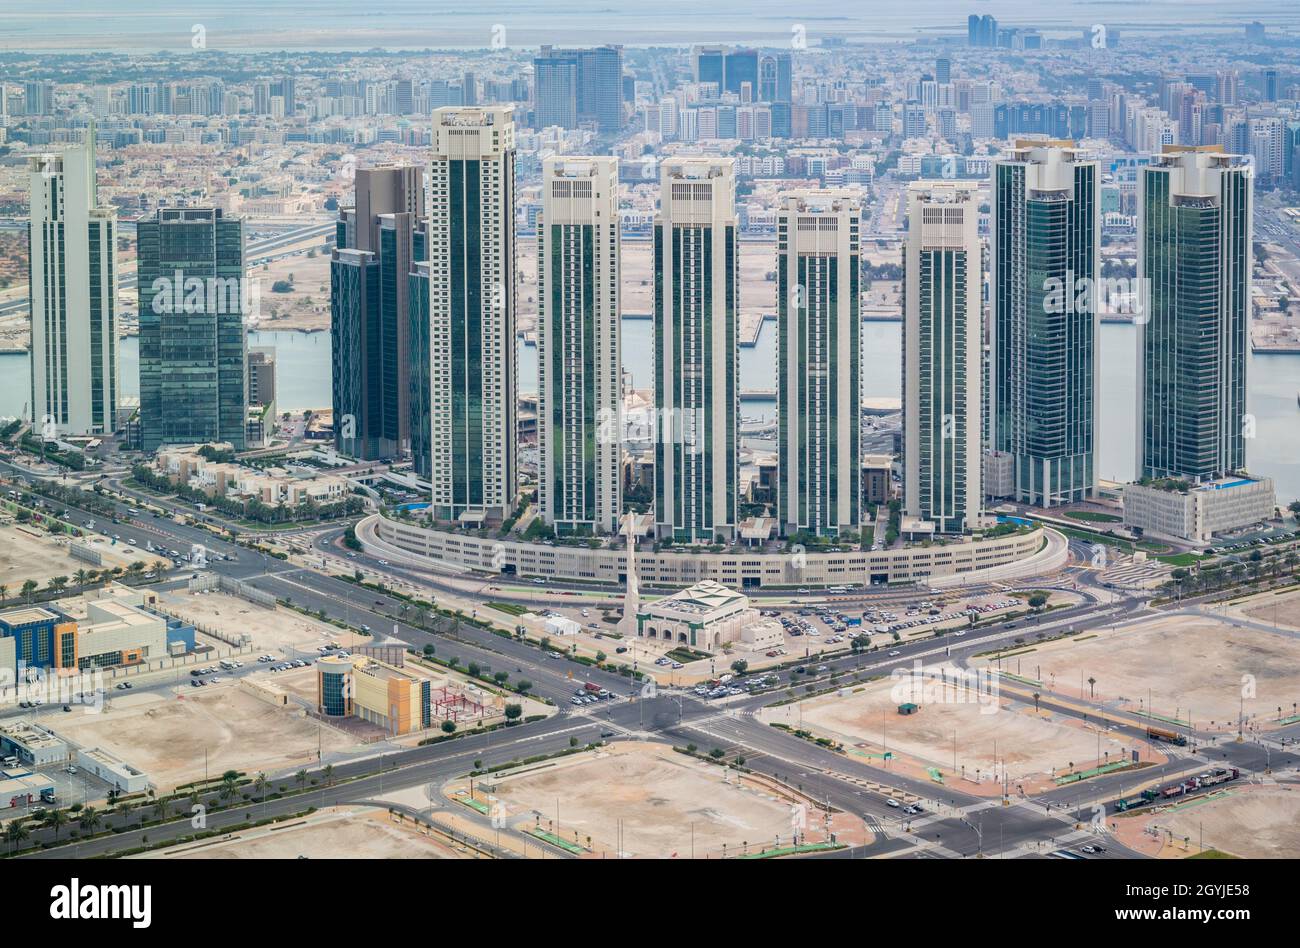 Imagen aérea de los edificios de la isla de Al Reem, las torres de la puerta, las torres del Sol y el Cielo, los puntos de interés y las atracciones de la ciudad de Abu Dhabi Foto de stock